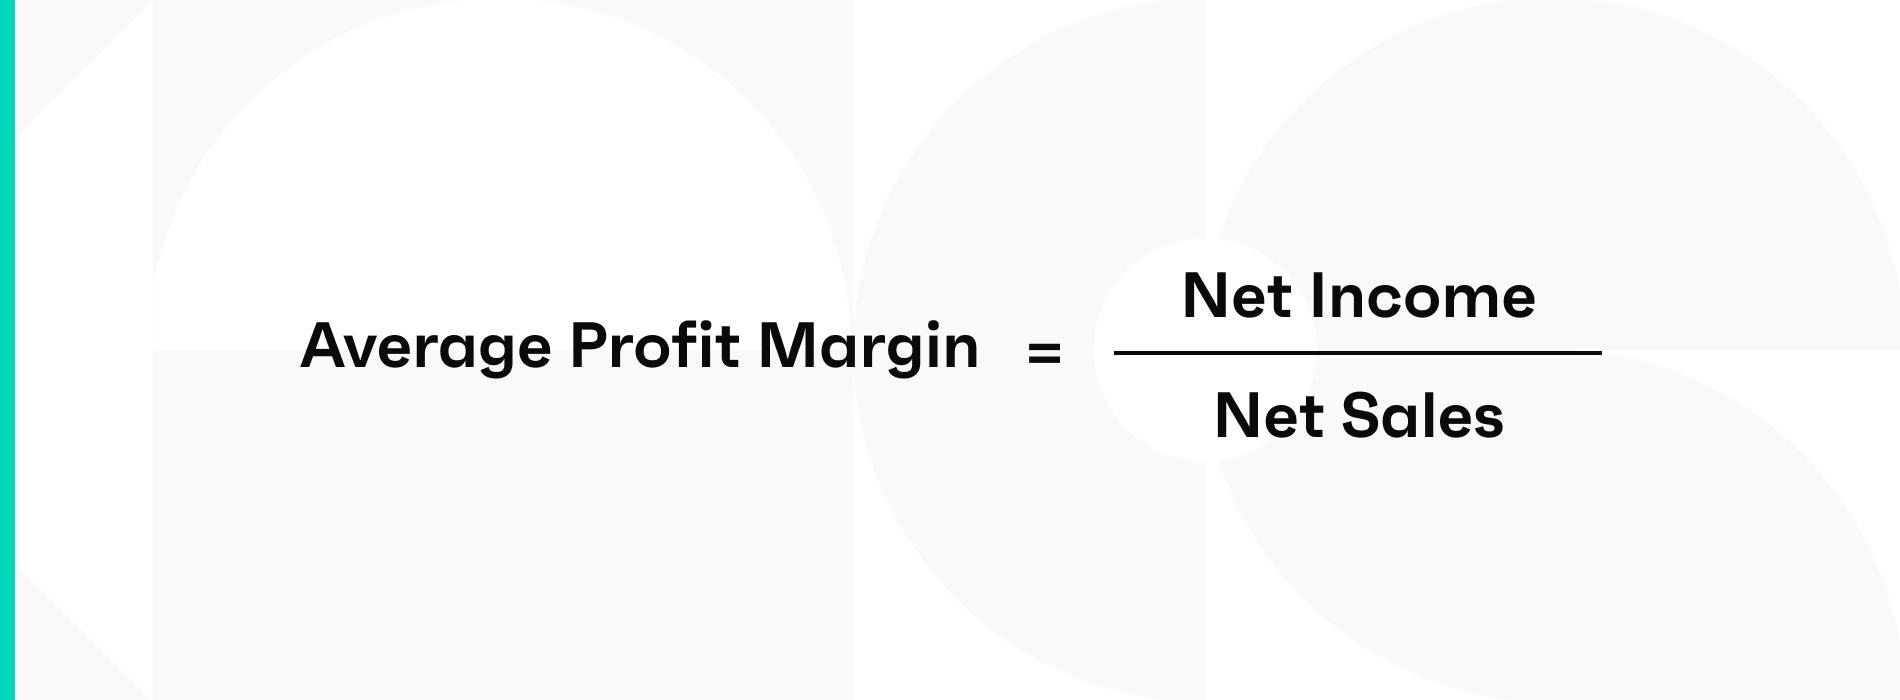 Average profit margin = net income / net sales